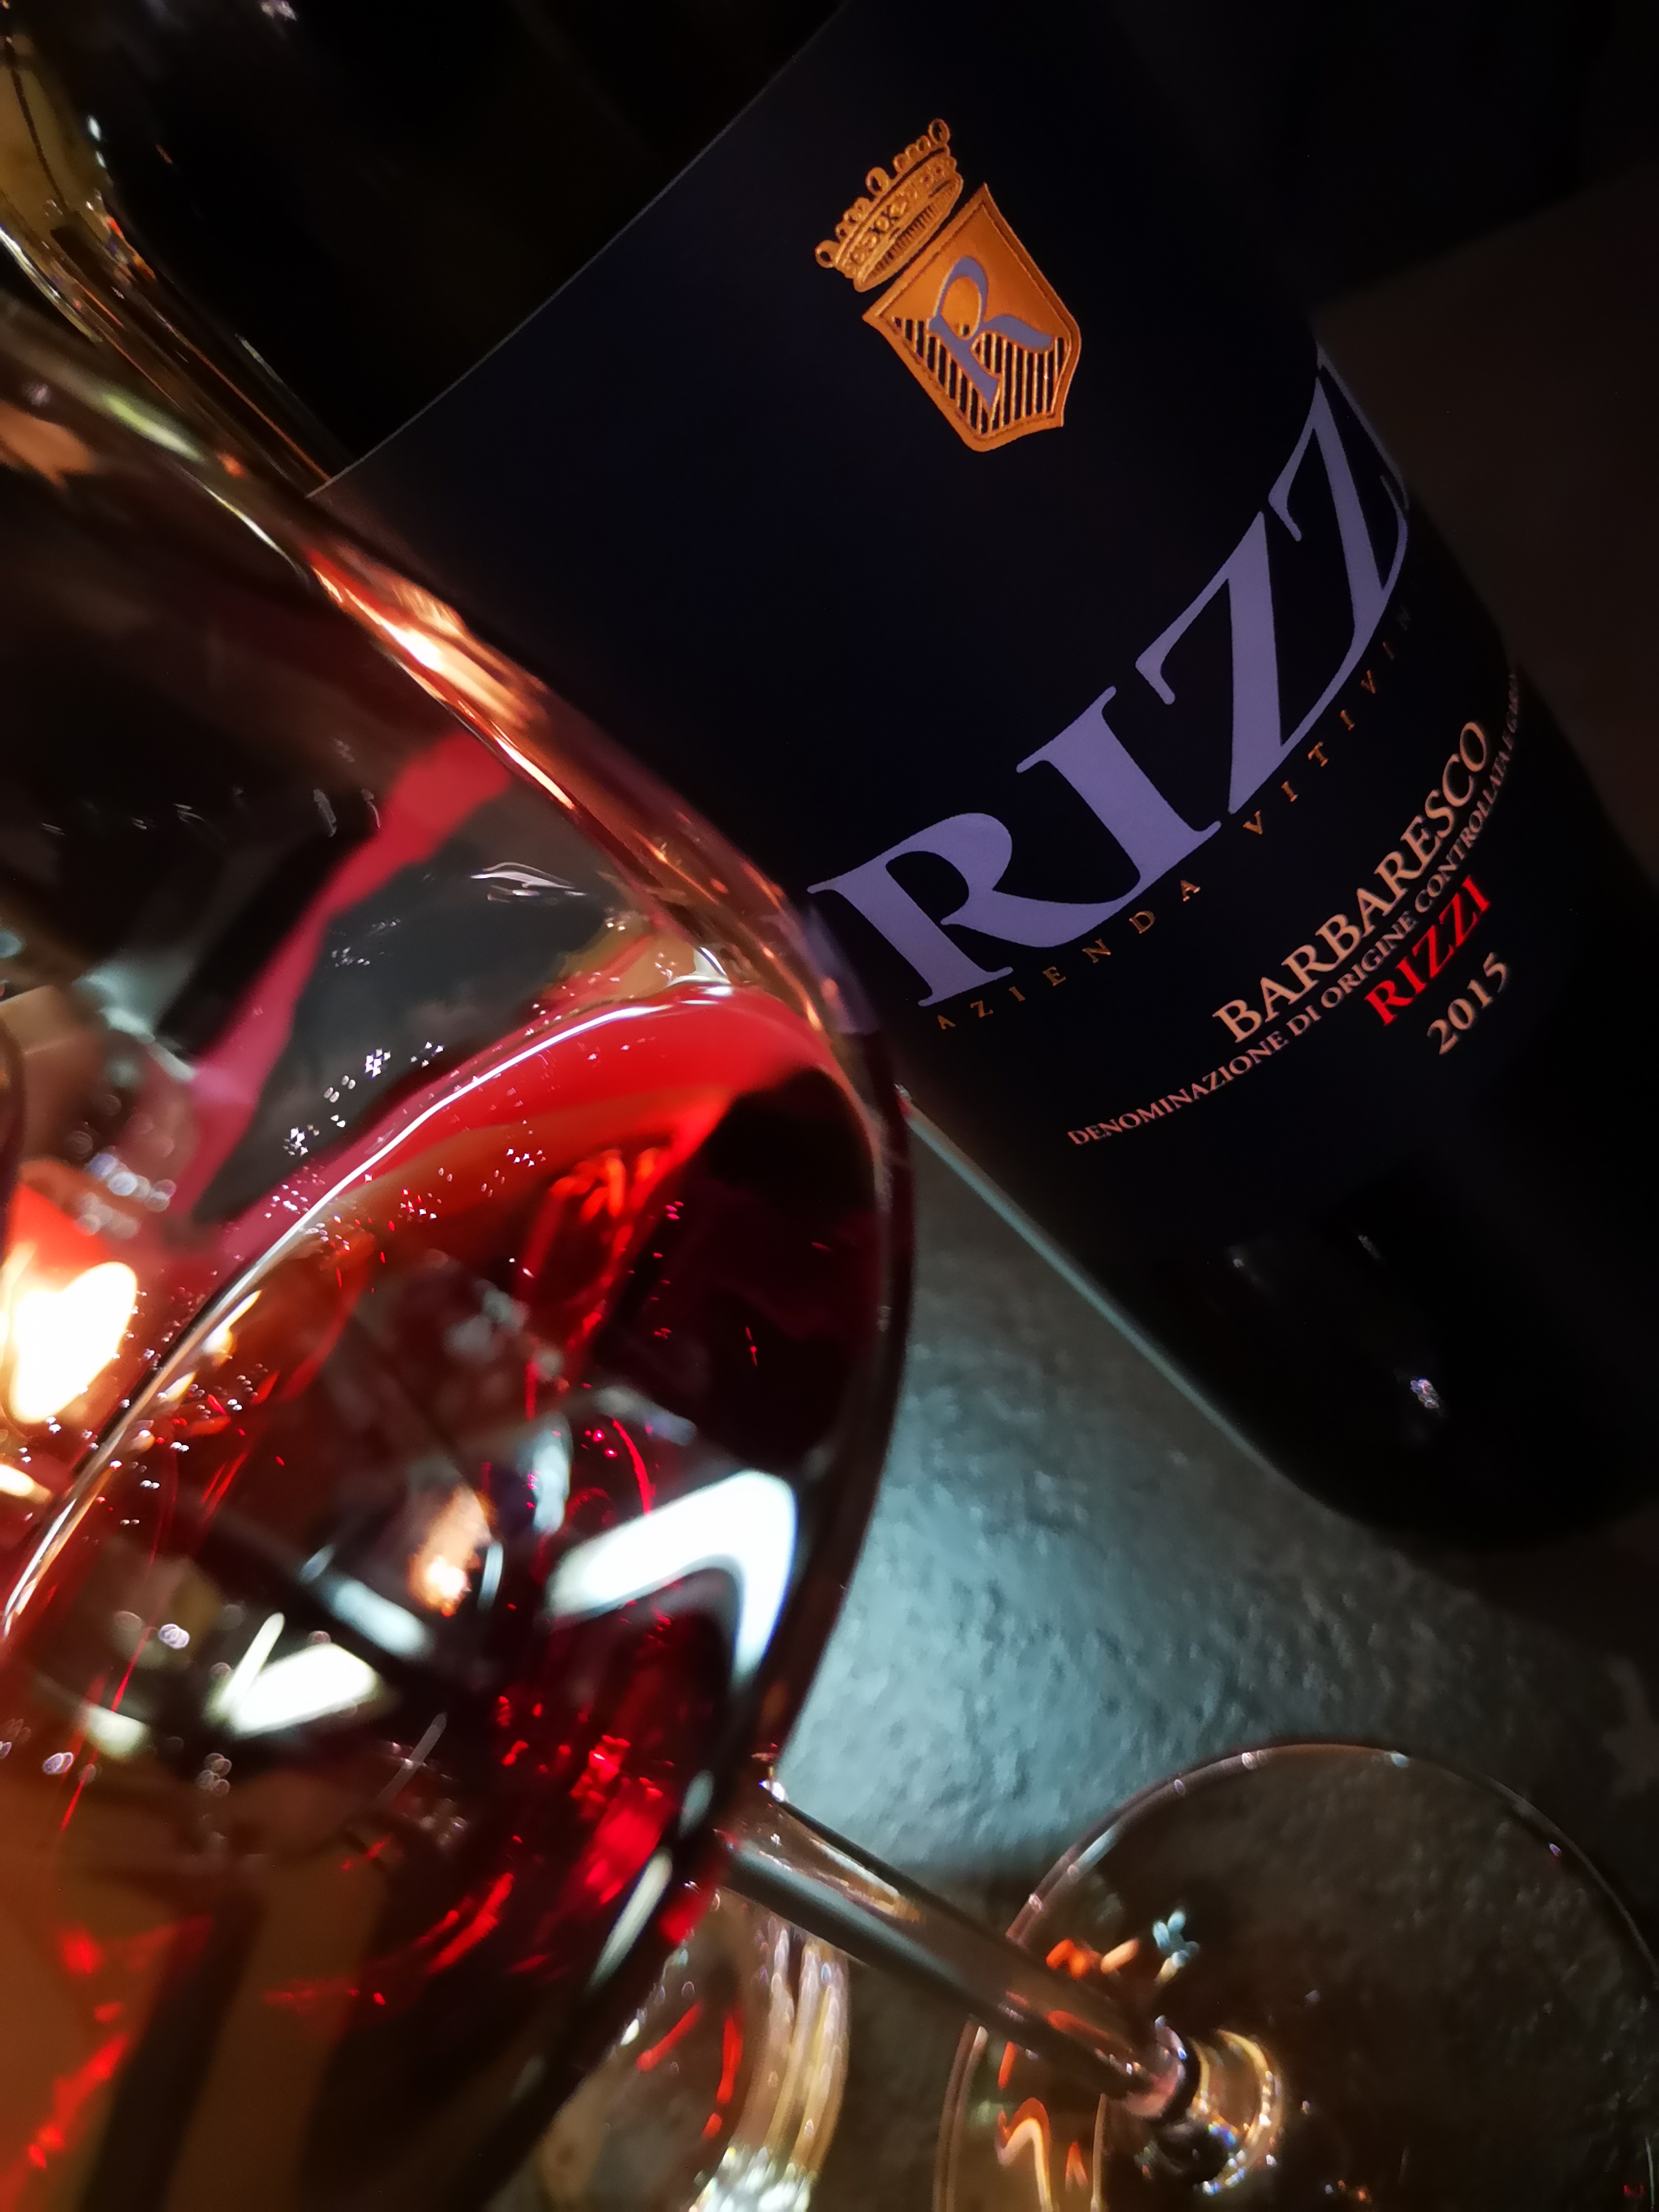 Enonauta/Degustazione di Vino #045 - wine review - Barbaresco 2015 RIZZI. Vino di grande finezza olfattiva coniugata alla prestanza